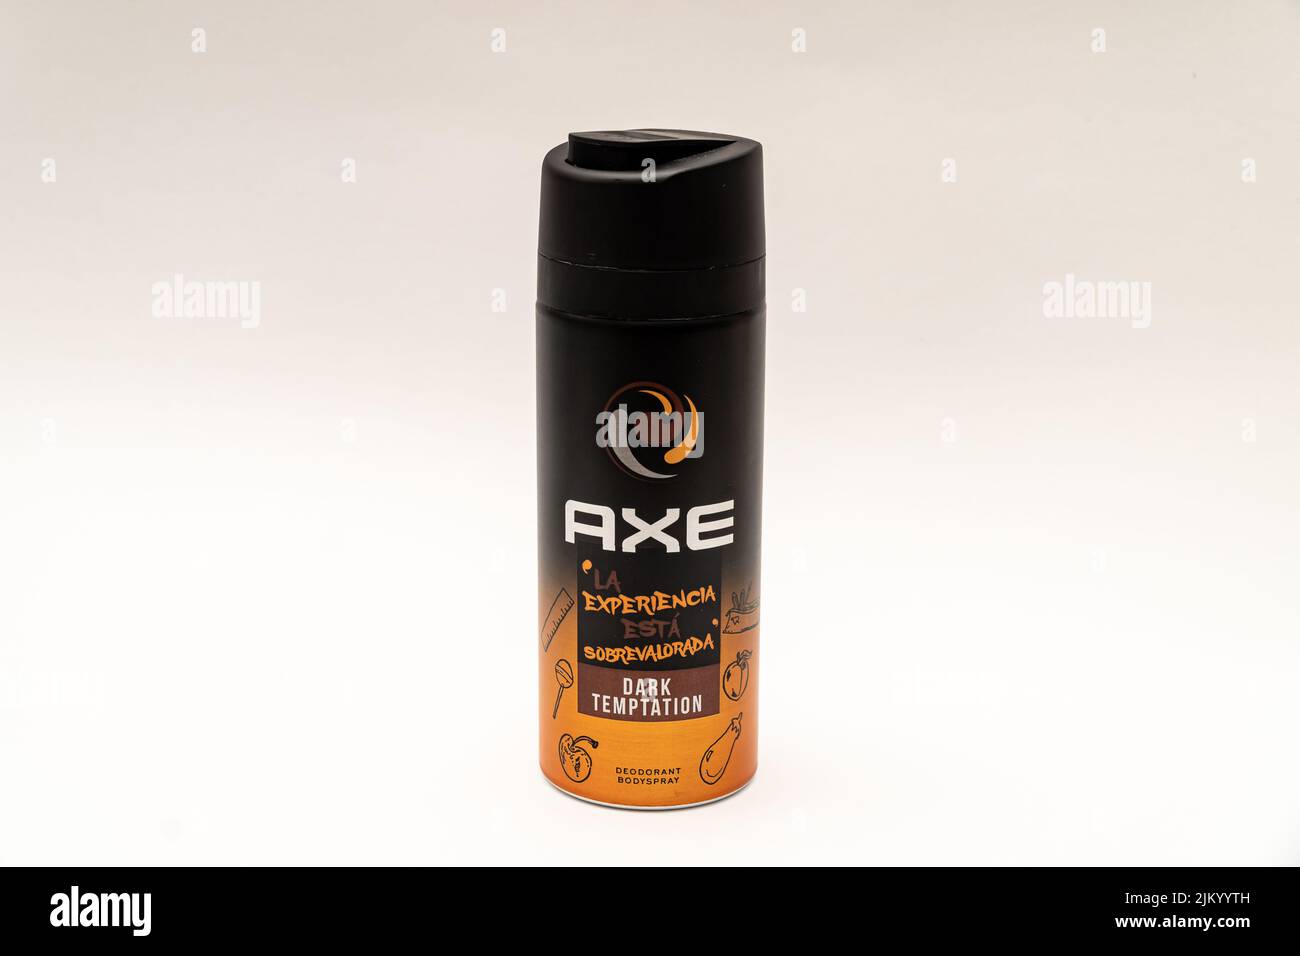 Mens deodorant brand immagini e fotografie stock ad alta risoluzione - Alamy